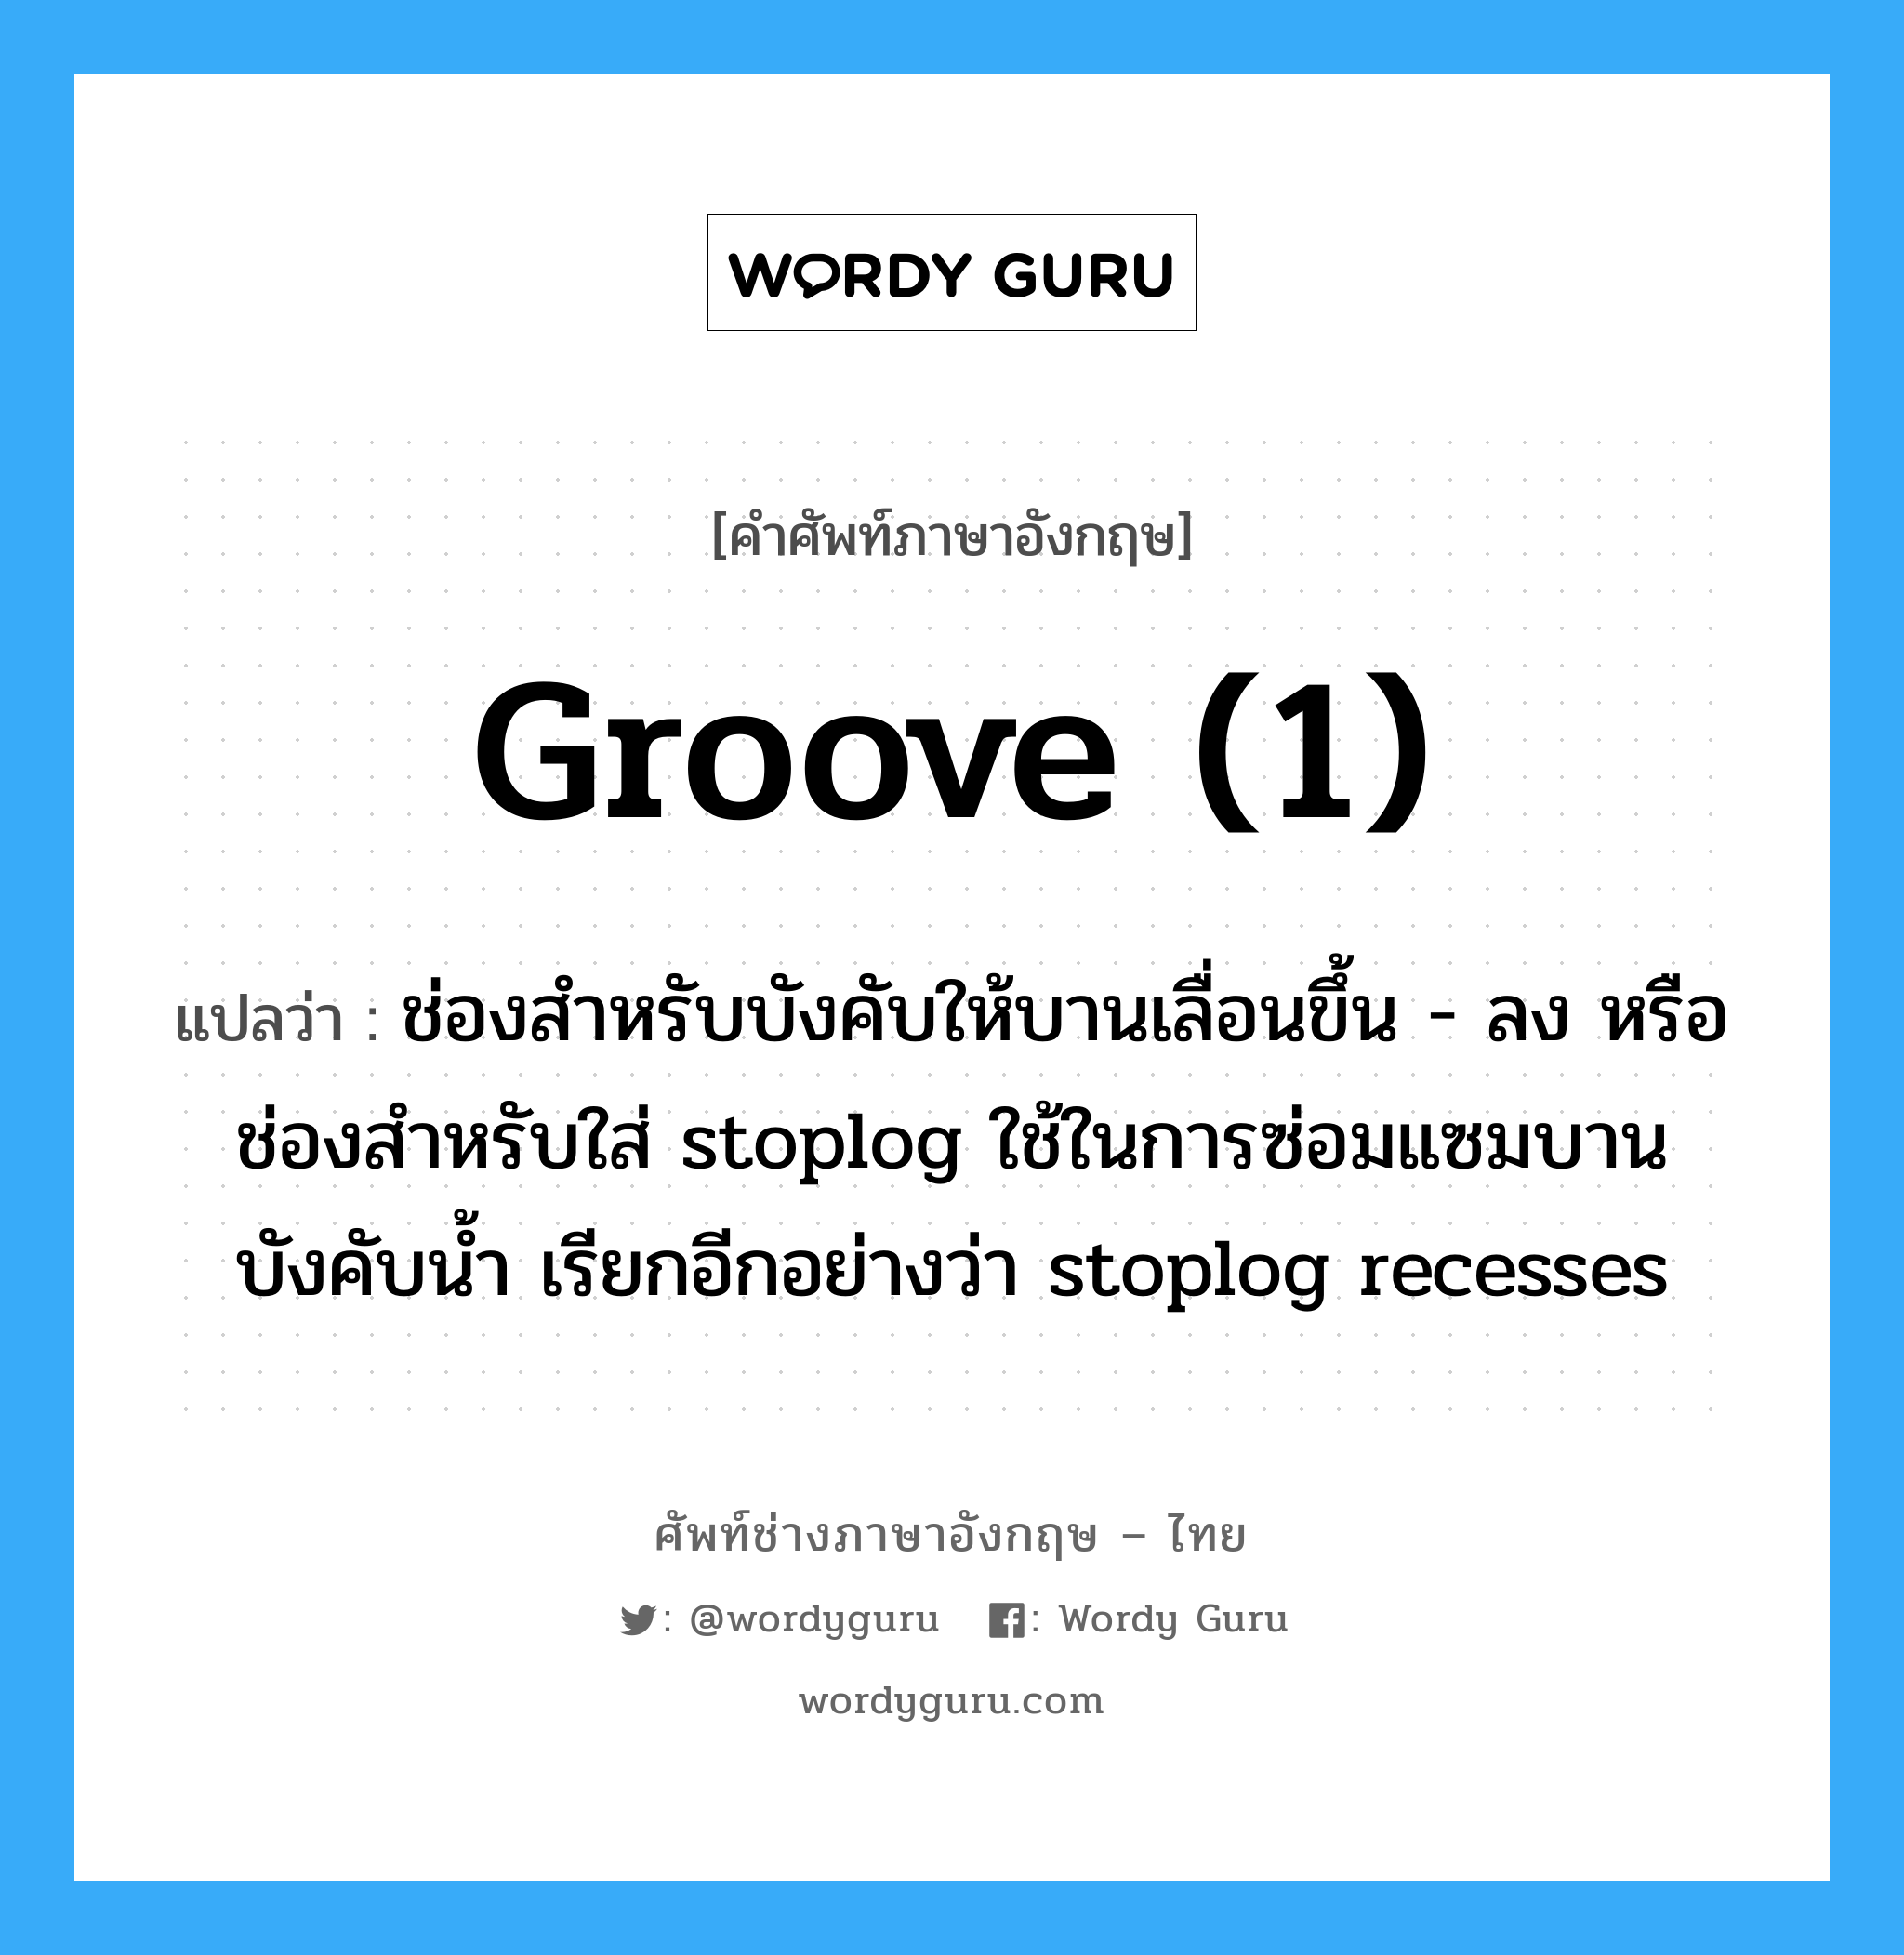 groove (1) แปลว่า?, คำศัพท์ช่างภาษาอังกฤษ - ไทย groove (1) คำศัพท์ภาษาอังกฤษ groove (1) แปลว่า ช่องสำหรับบังคับให้บานเลื่อนขึ้น - ลง หรือ ช่องสำหรับใส่ stoplog ใช้ในการซ่อมแซมบานบังคับน้ำ เรียกอีกอย่างว่า stoplog recesses